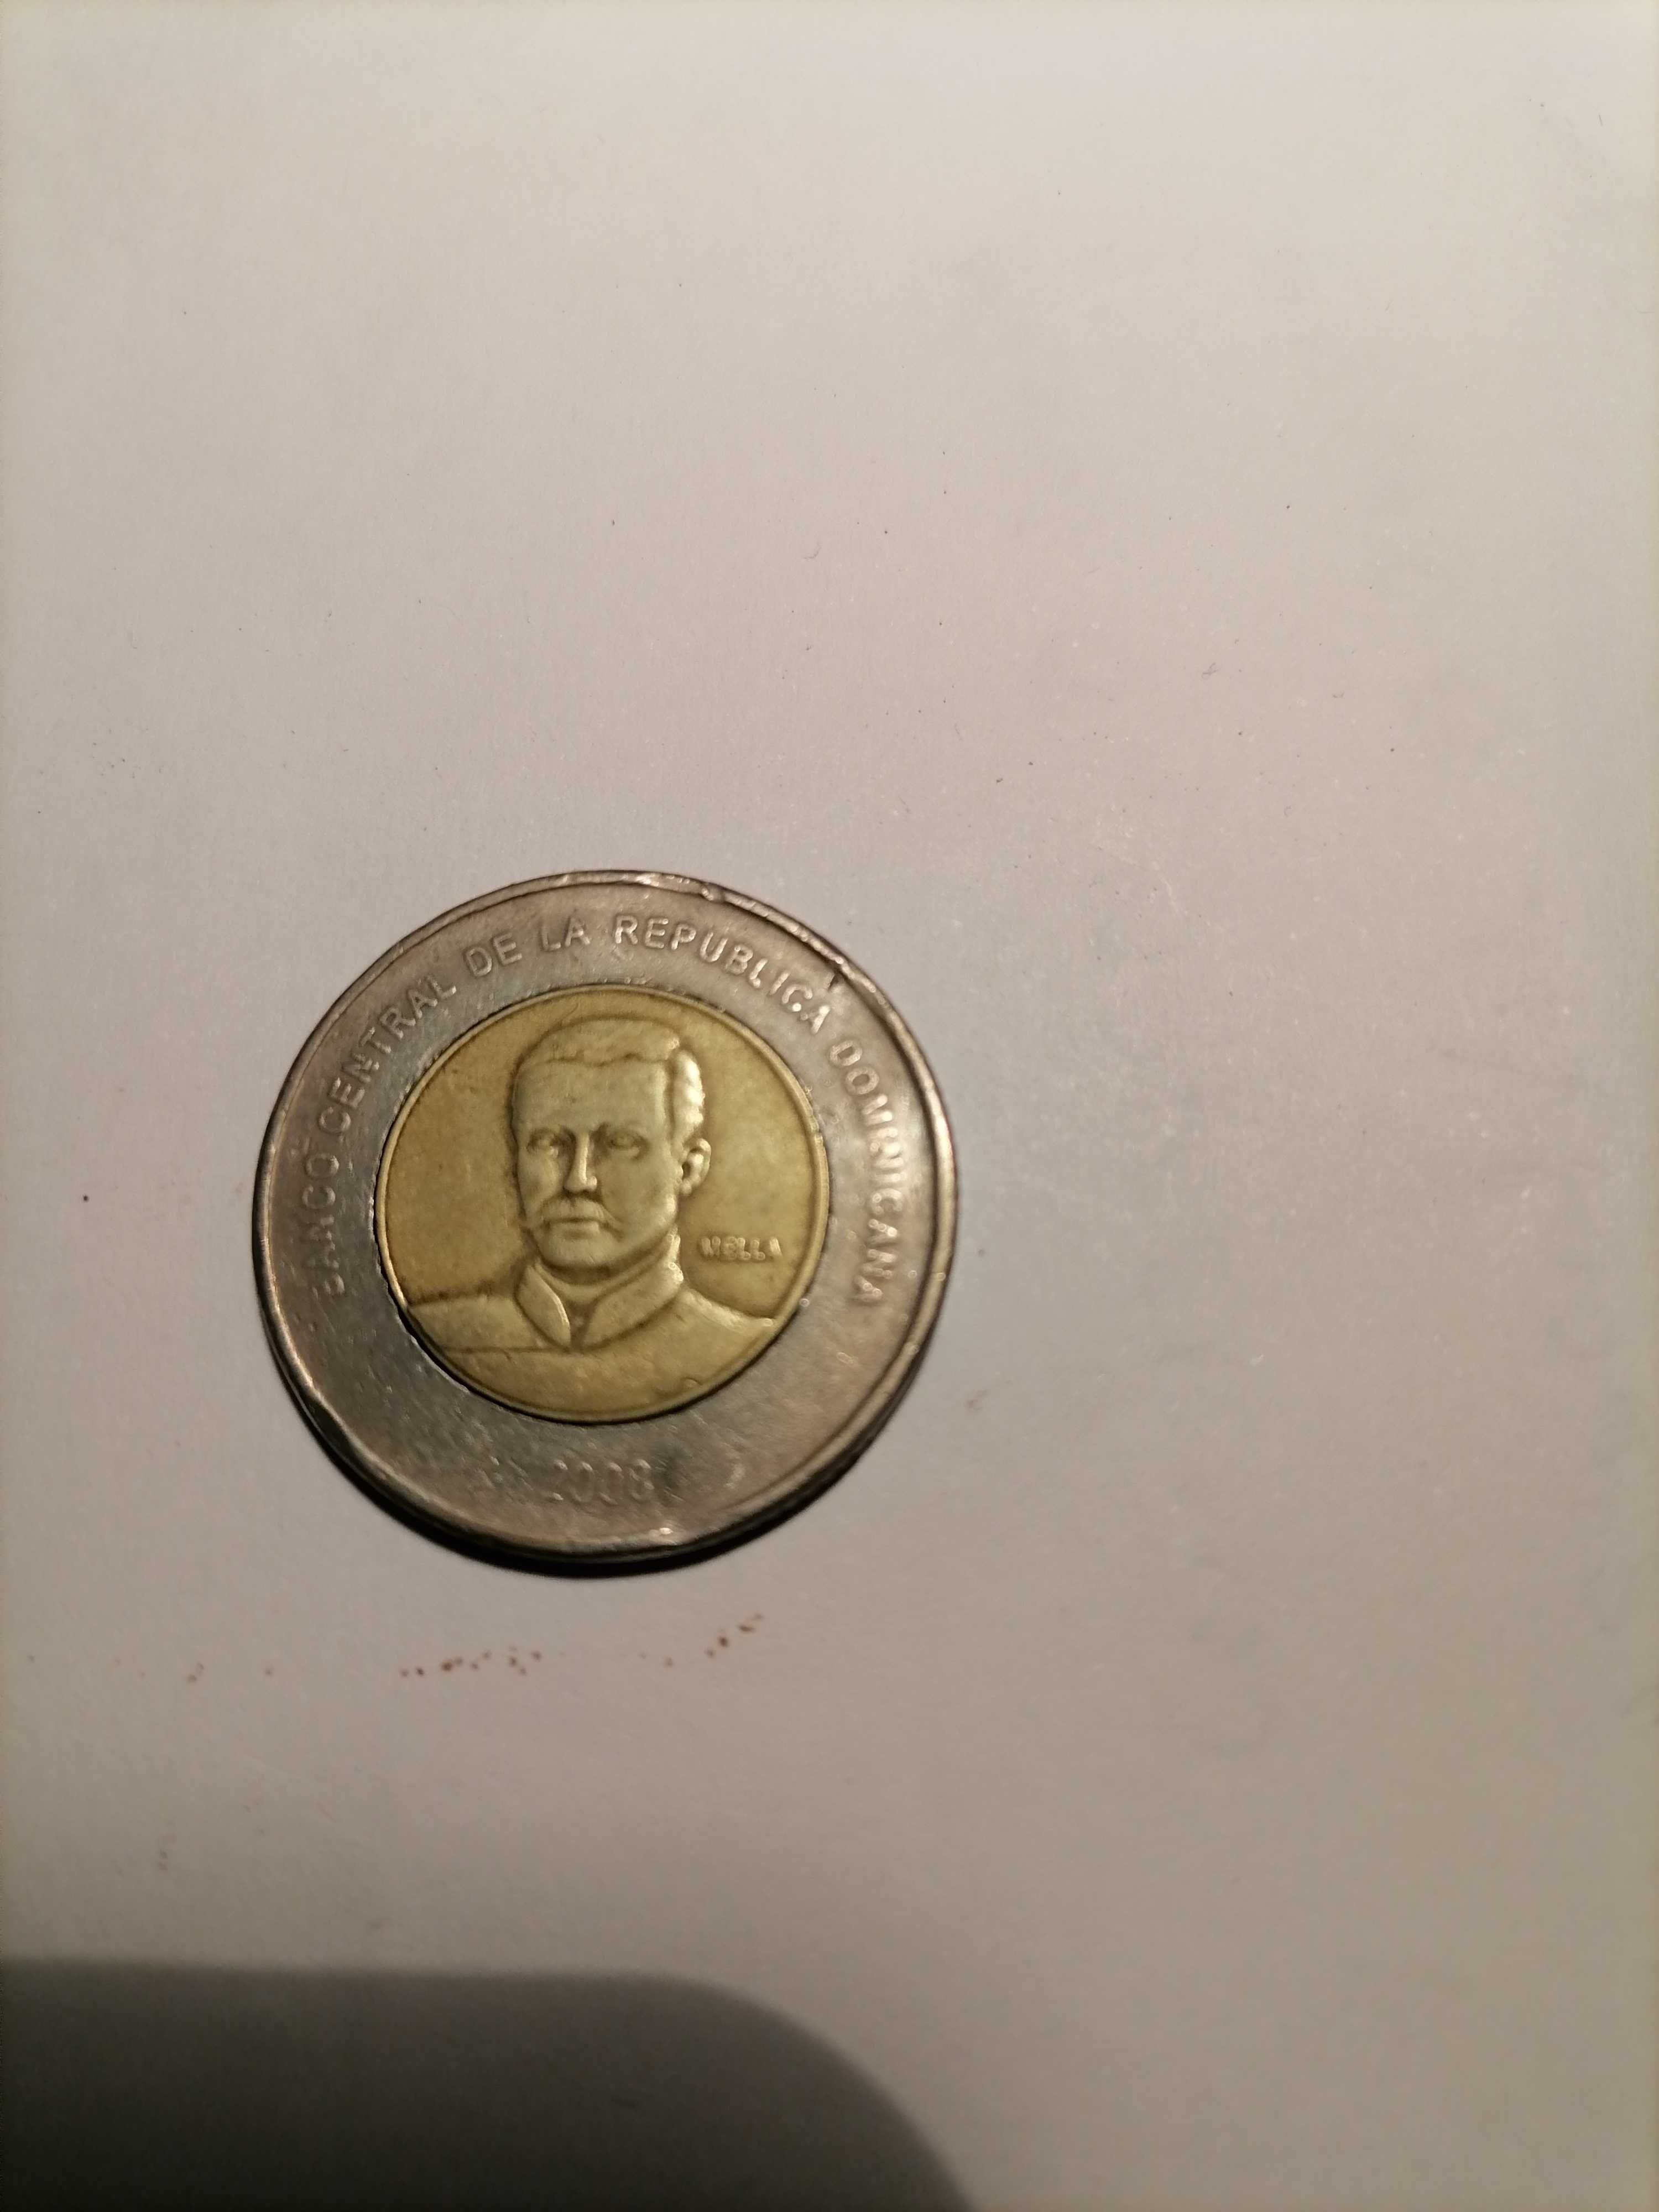 Duas moedas da Republica Dominicana